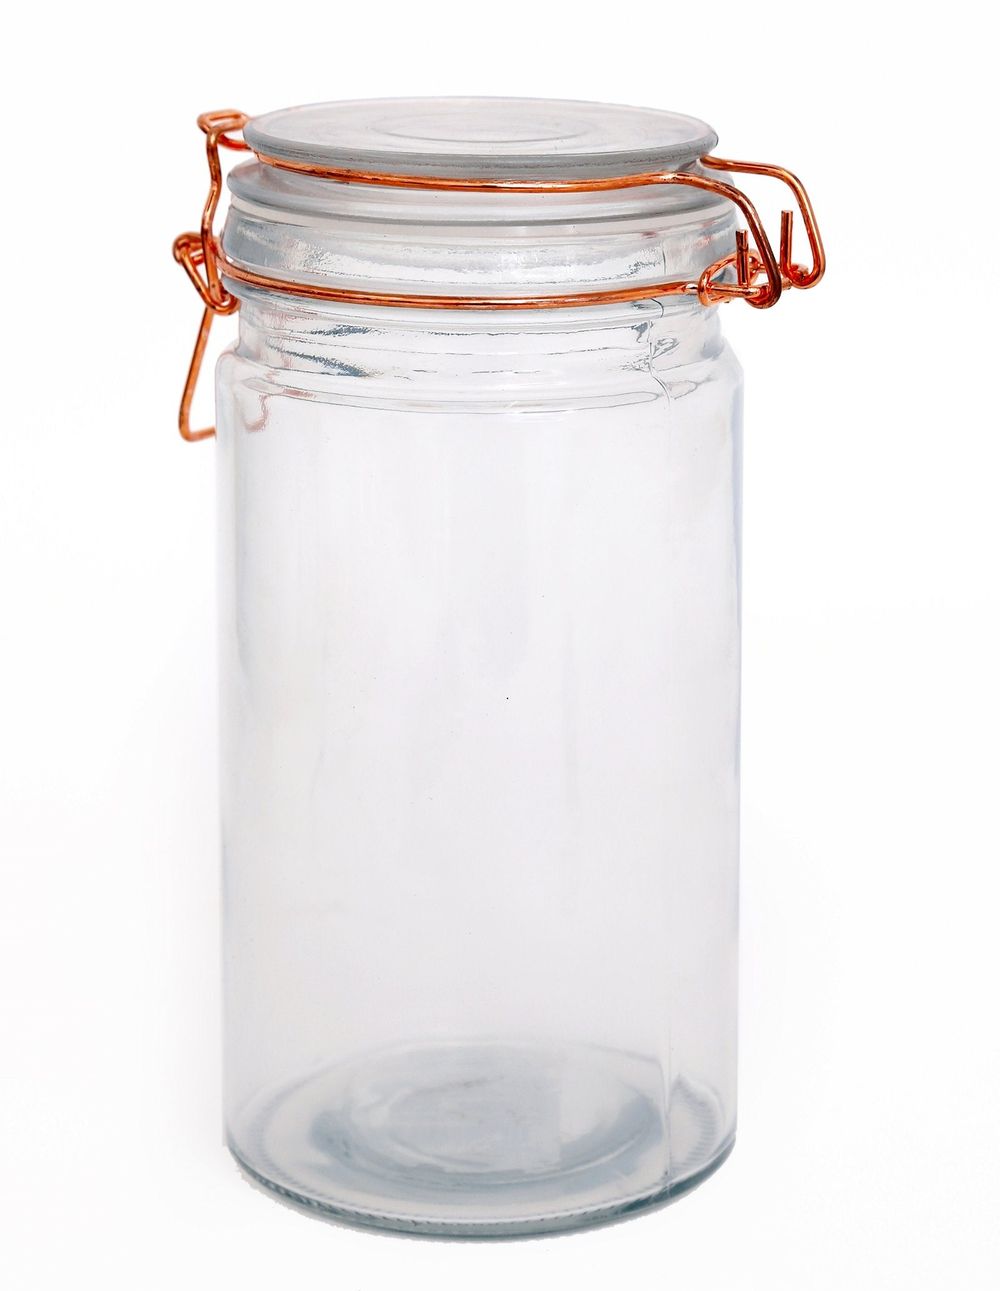 Kitchen Storage Jar With Copper Clip 20cm